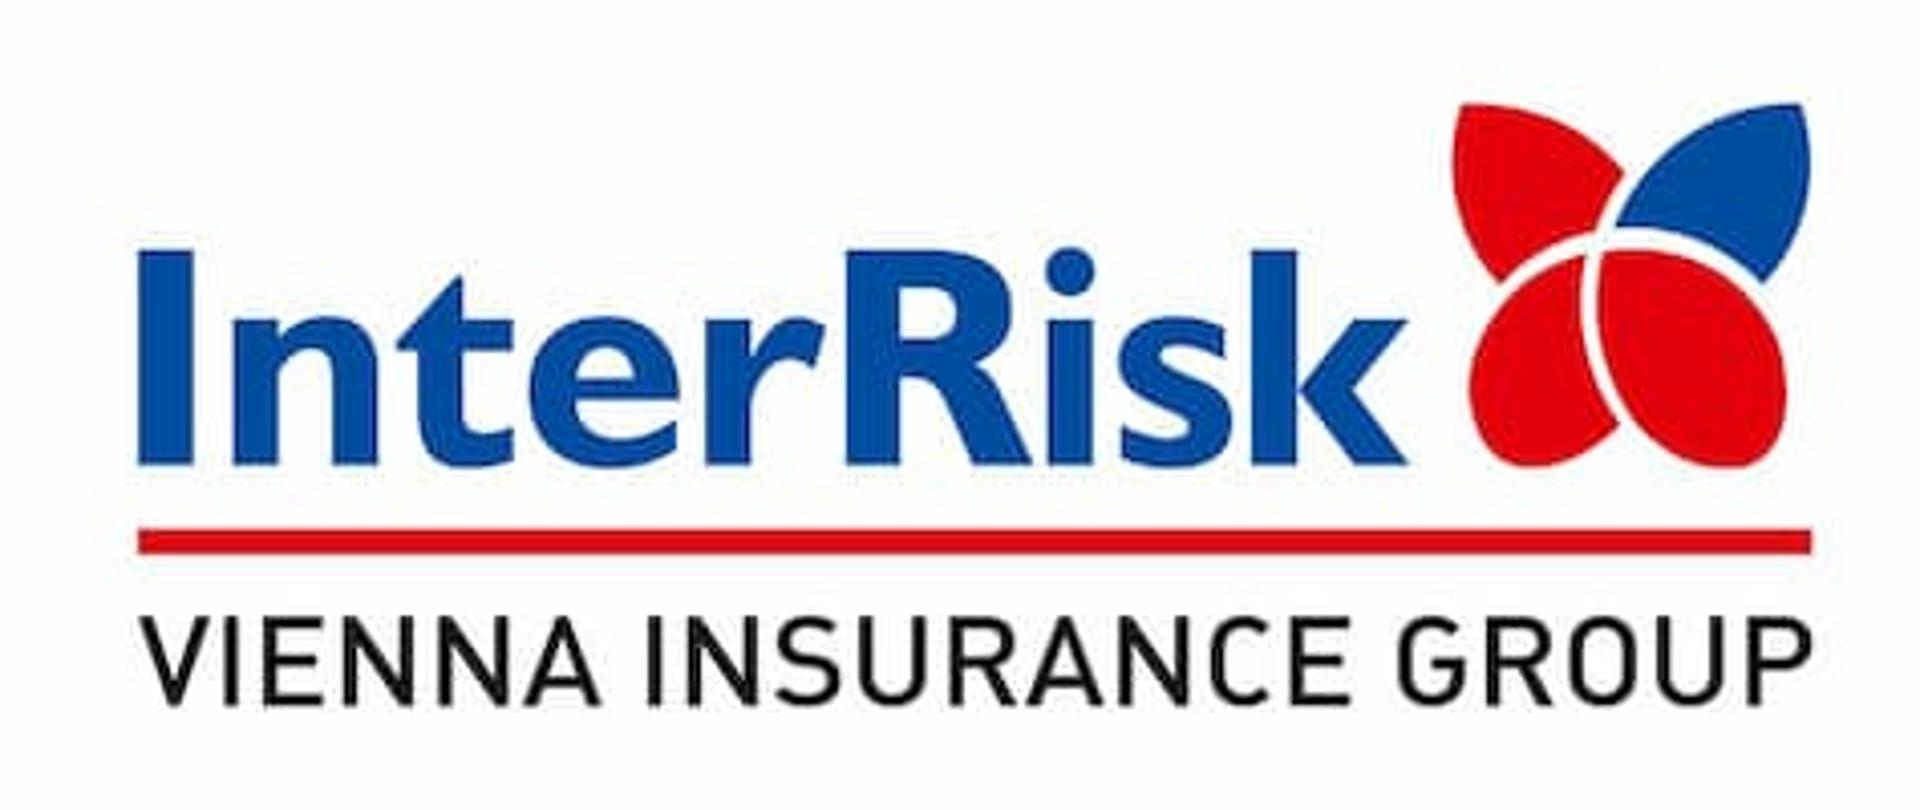 na białym tle niebieski napis InterRisk obok z prawej strony logo firmy ubezpieczeniowej, pod napisem czerwona linia a pod nią napis drukowanymi czarnymi literami Vienne Insurance Group.